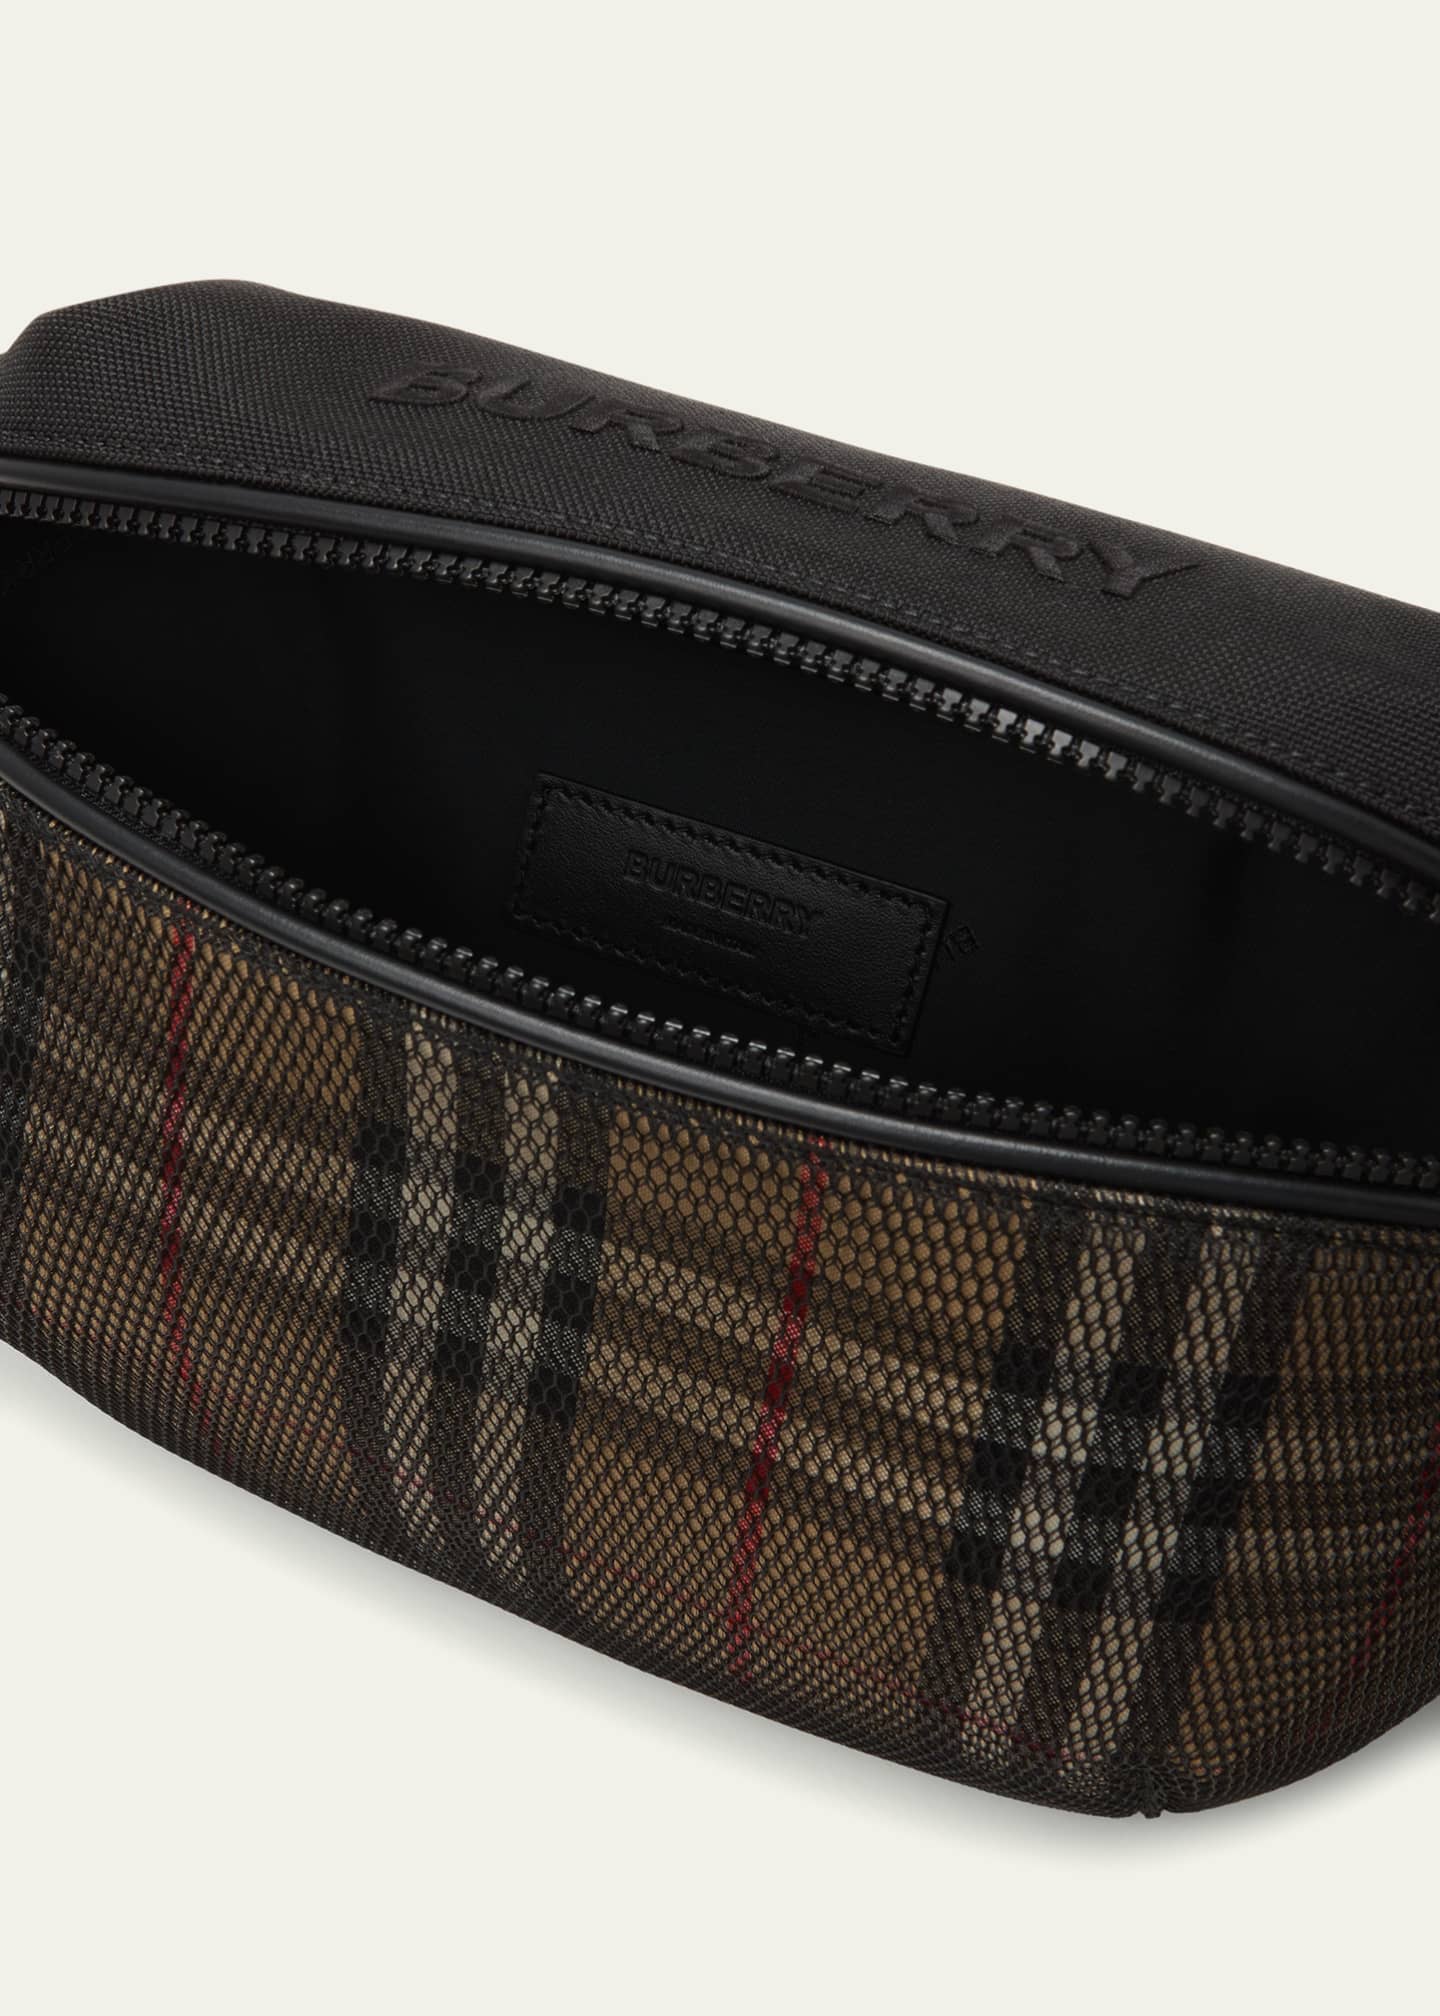 Men's Burberry Designer Belt Bags & Pouches